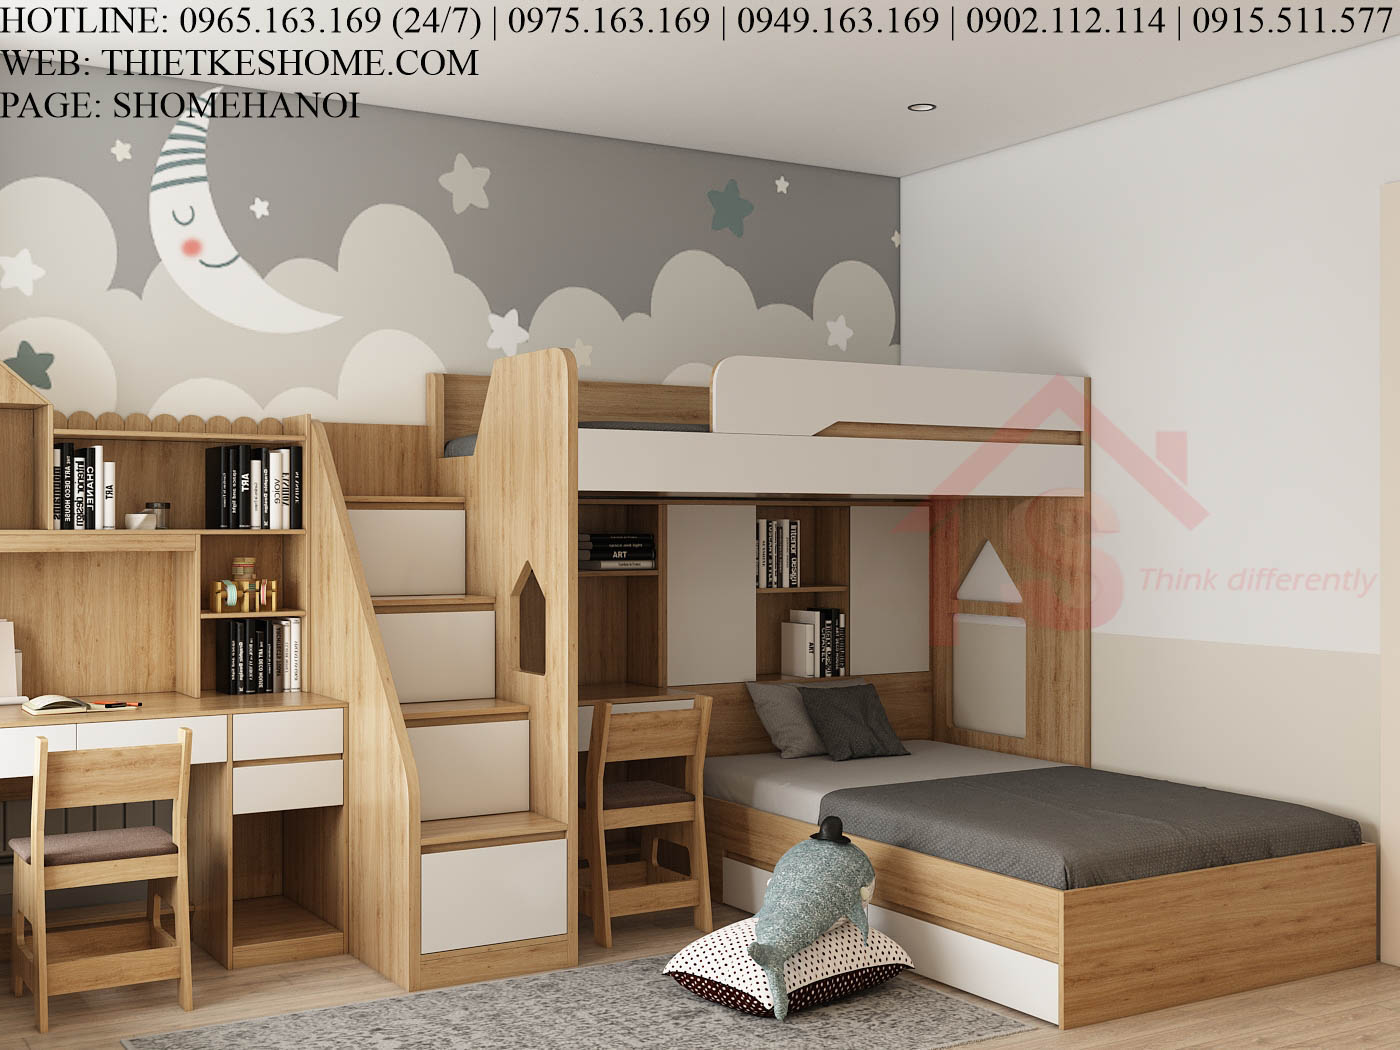 S HOME Combo mẫu nội thất phòng ngủ cho bé đẹp hiện đại tiện dụng SHOME6813